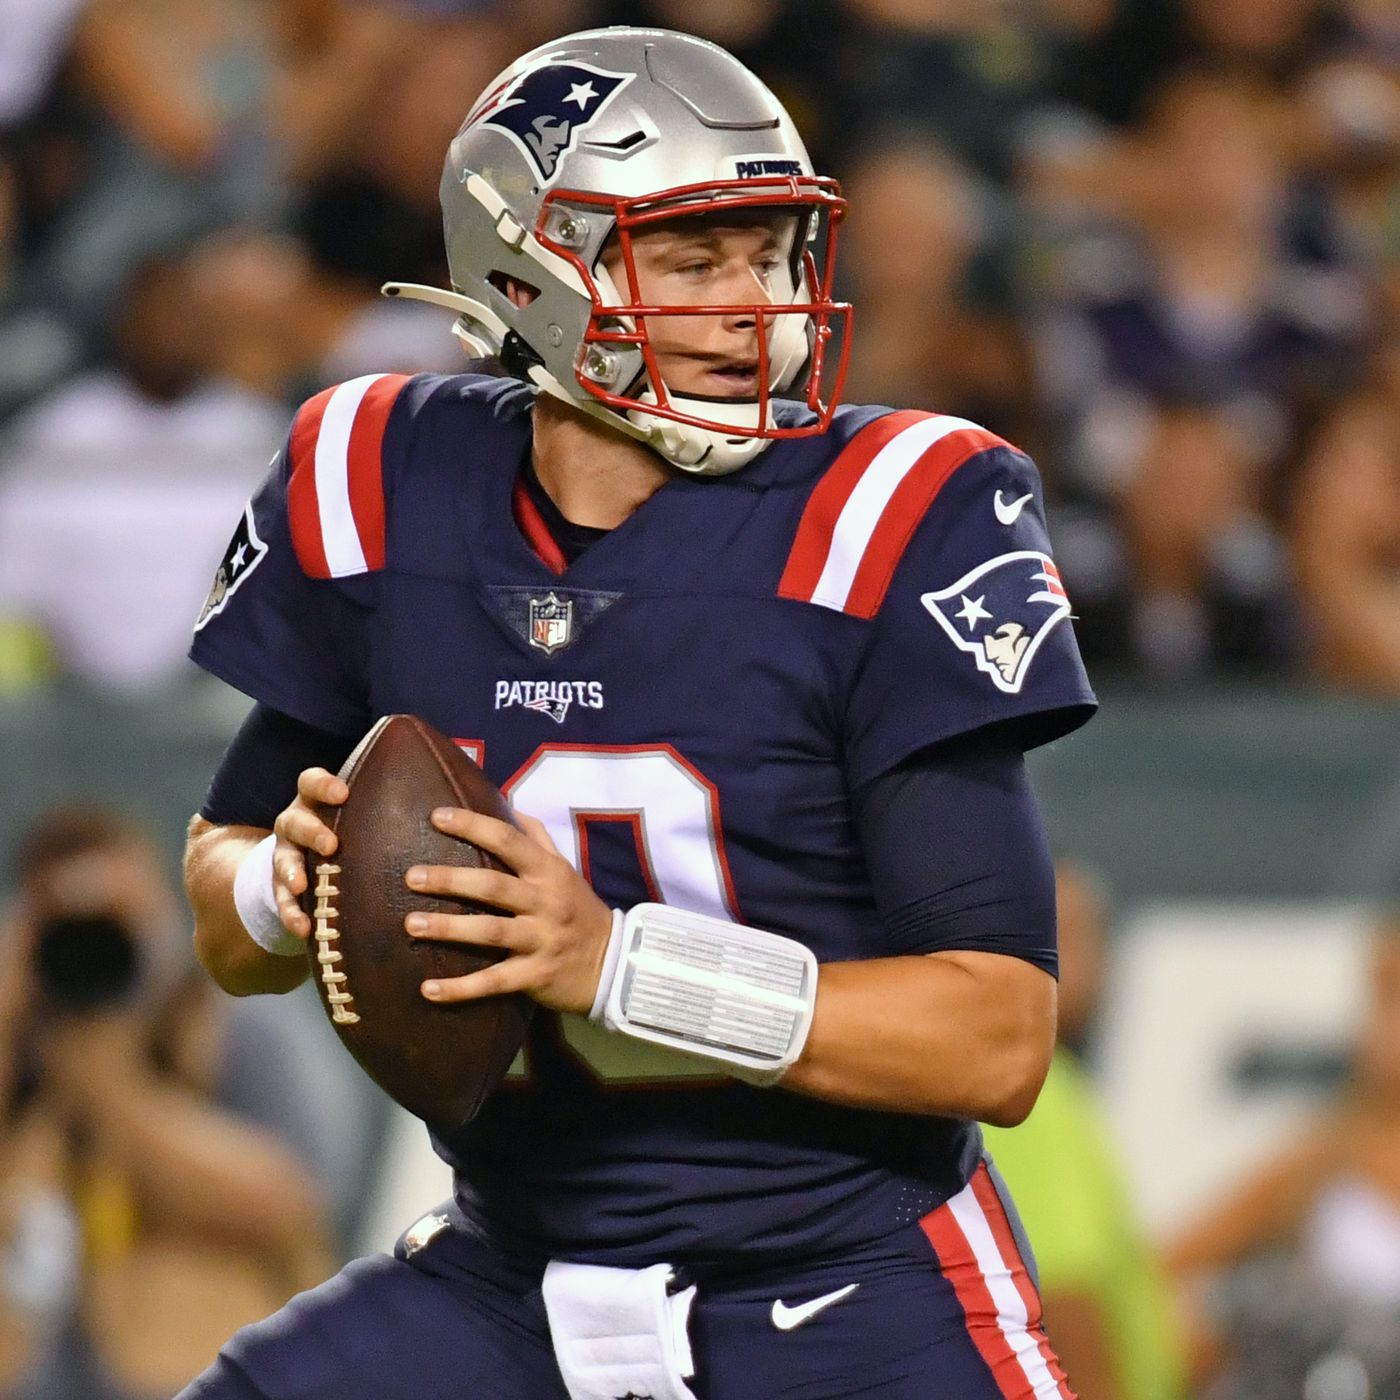 Mac Jones updates: How did Patriots rookie QB perform in Week 2 of preseason